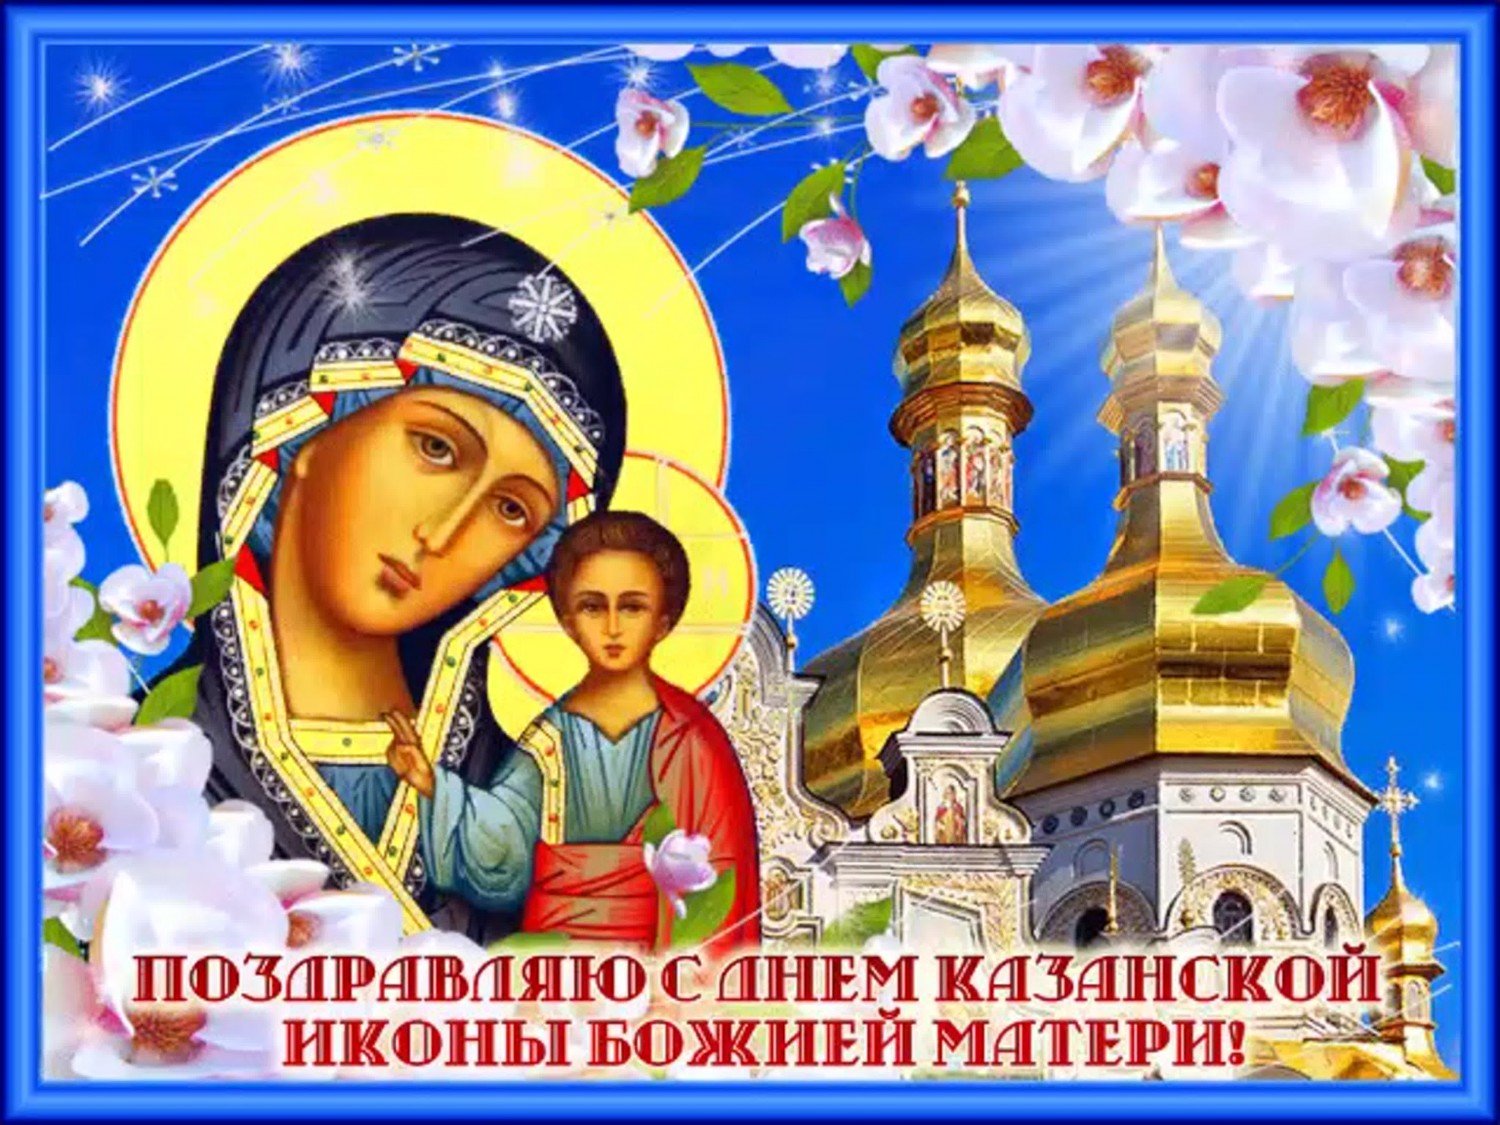 Казанская икона Божьей Матери: подборка лучших изображений